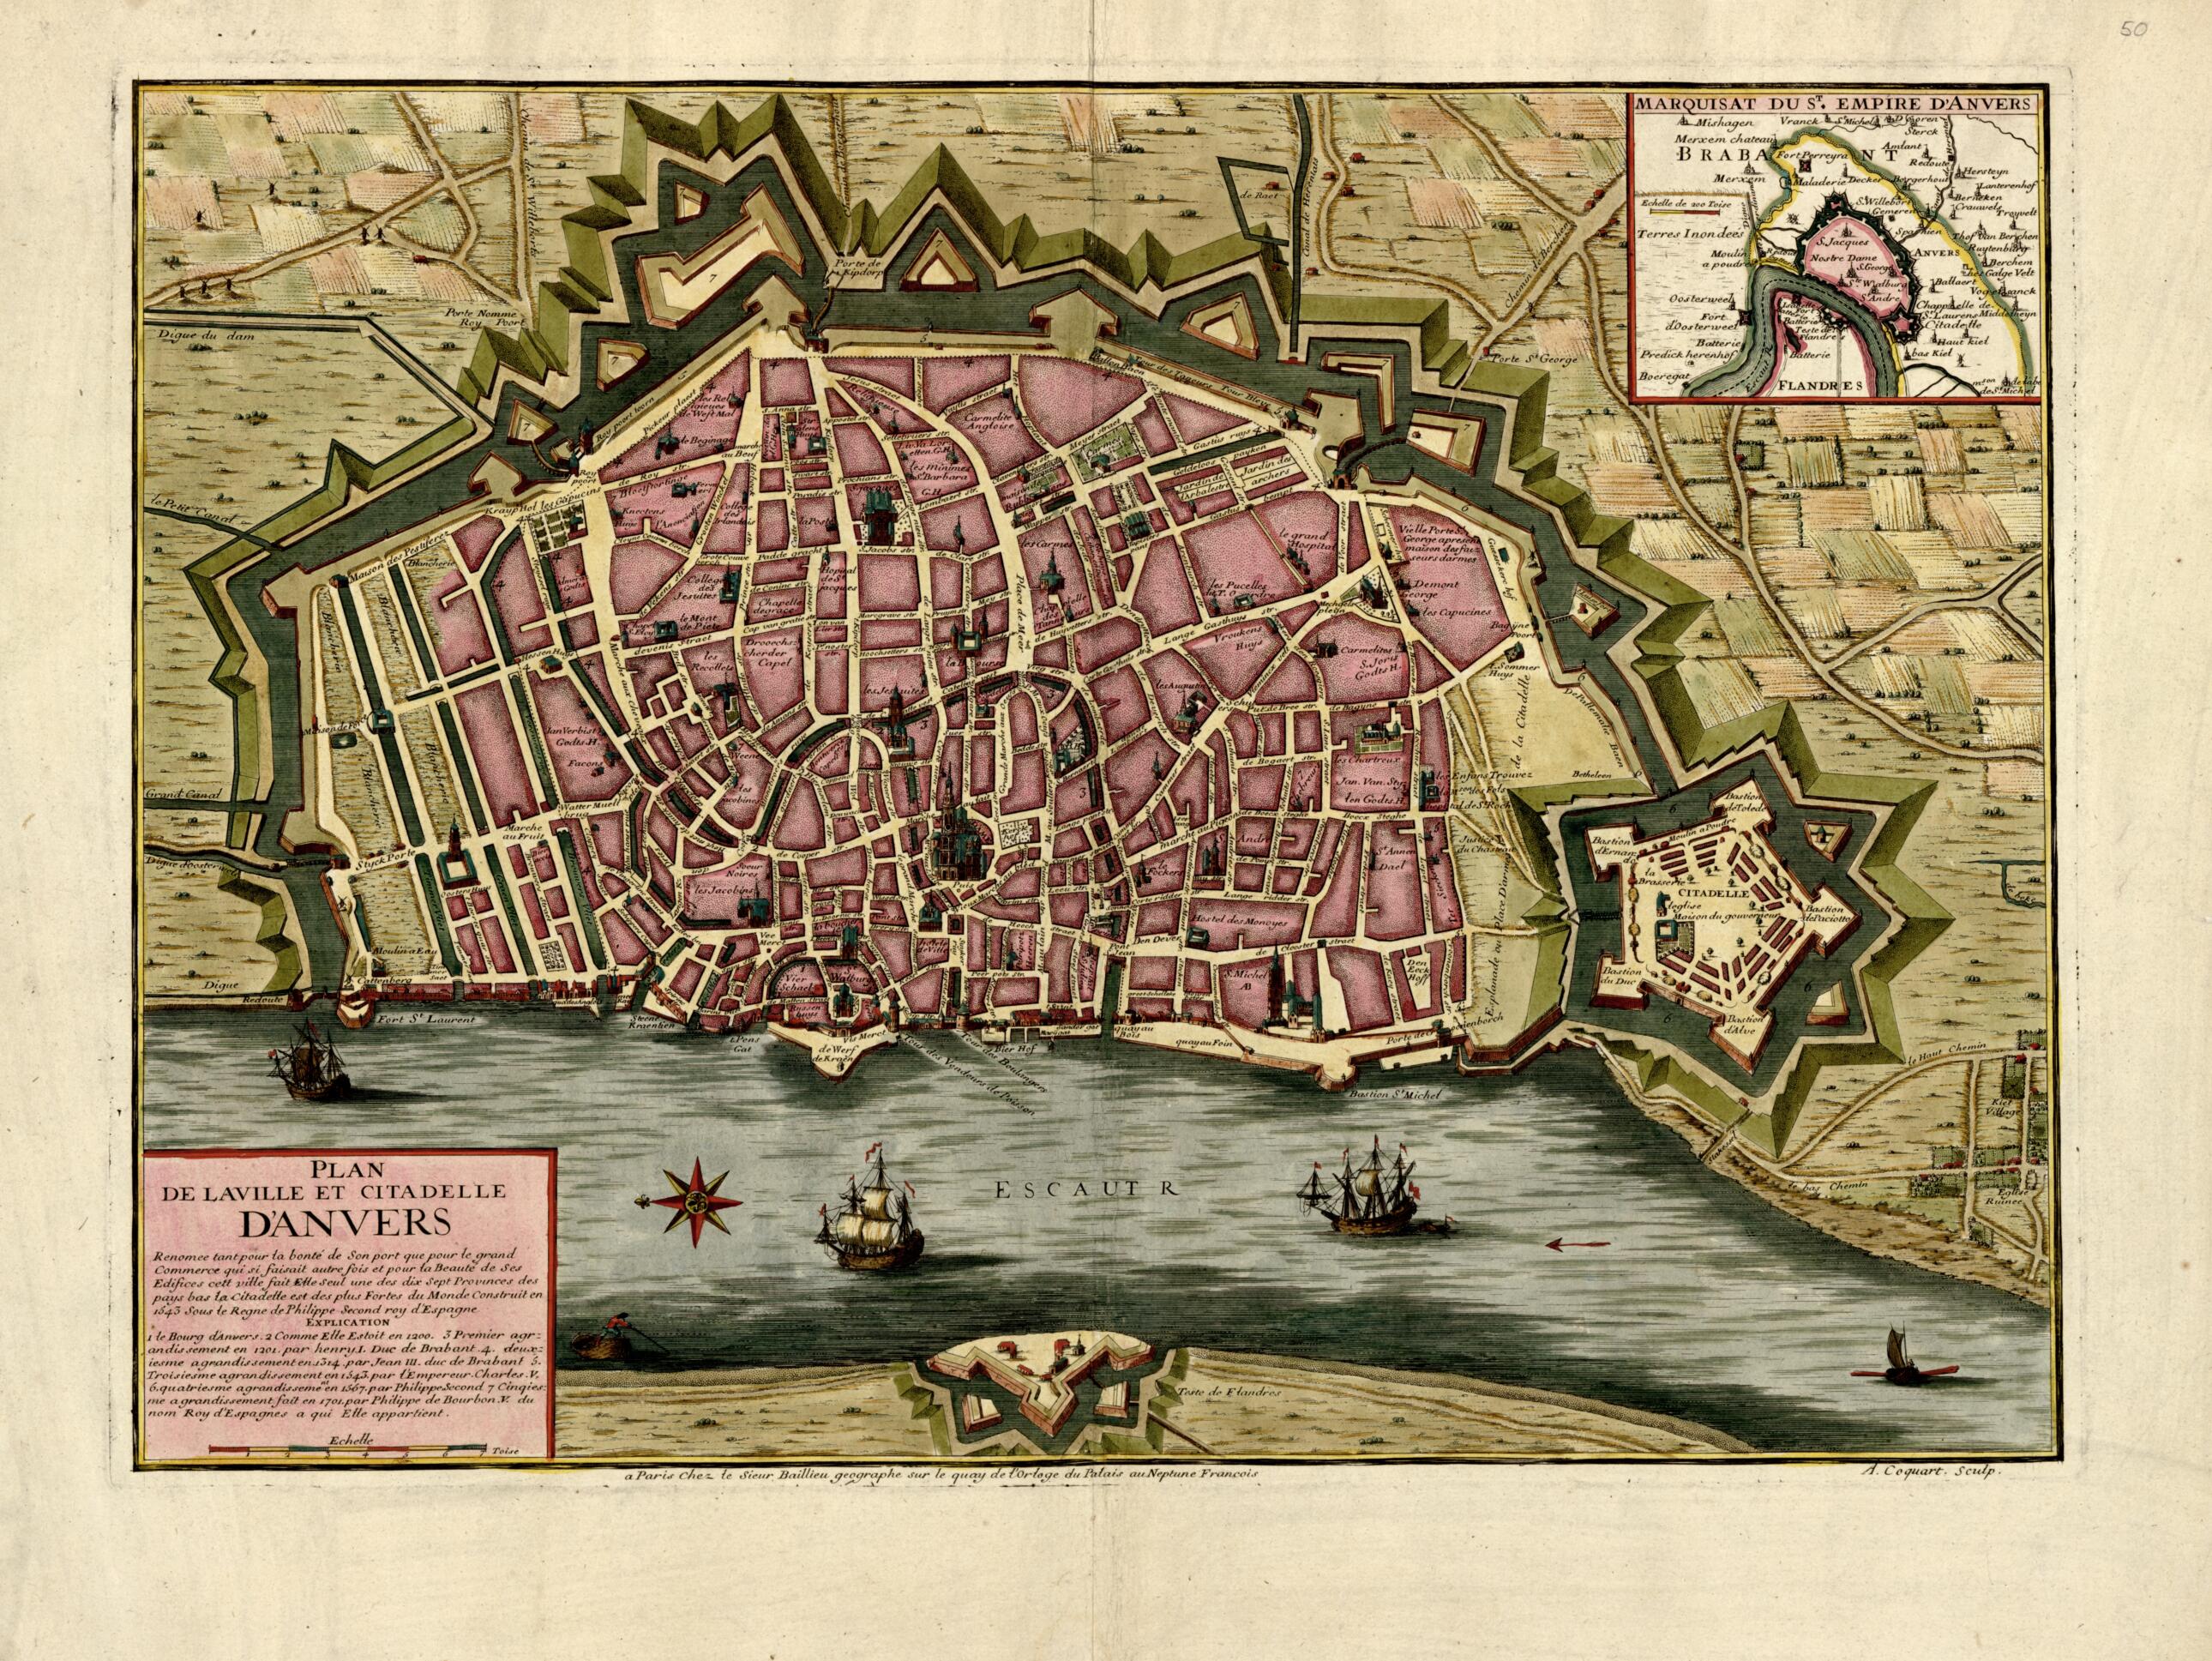 This old map of Plan De La Ville Et Citadelle D&